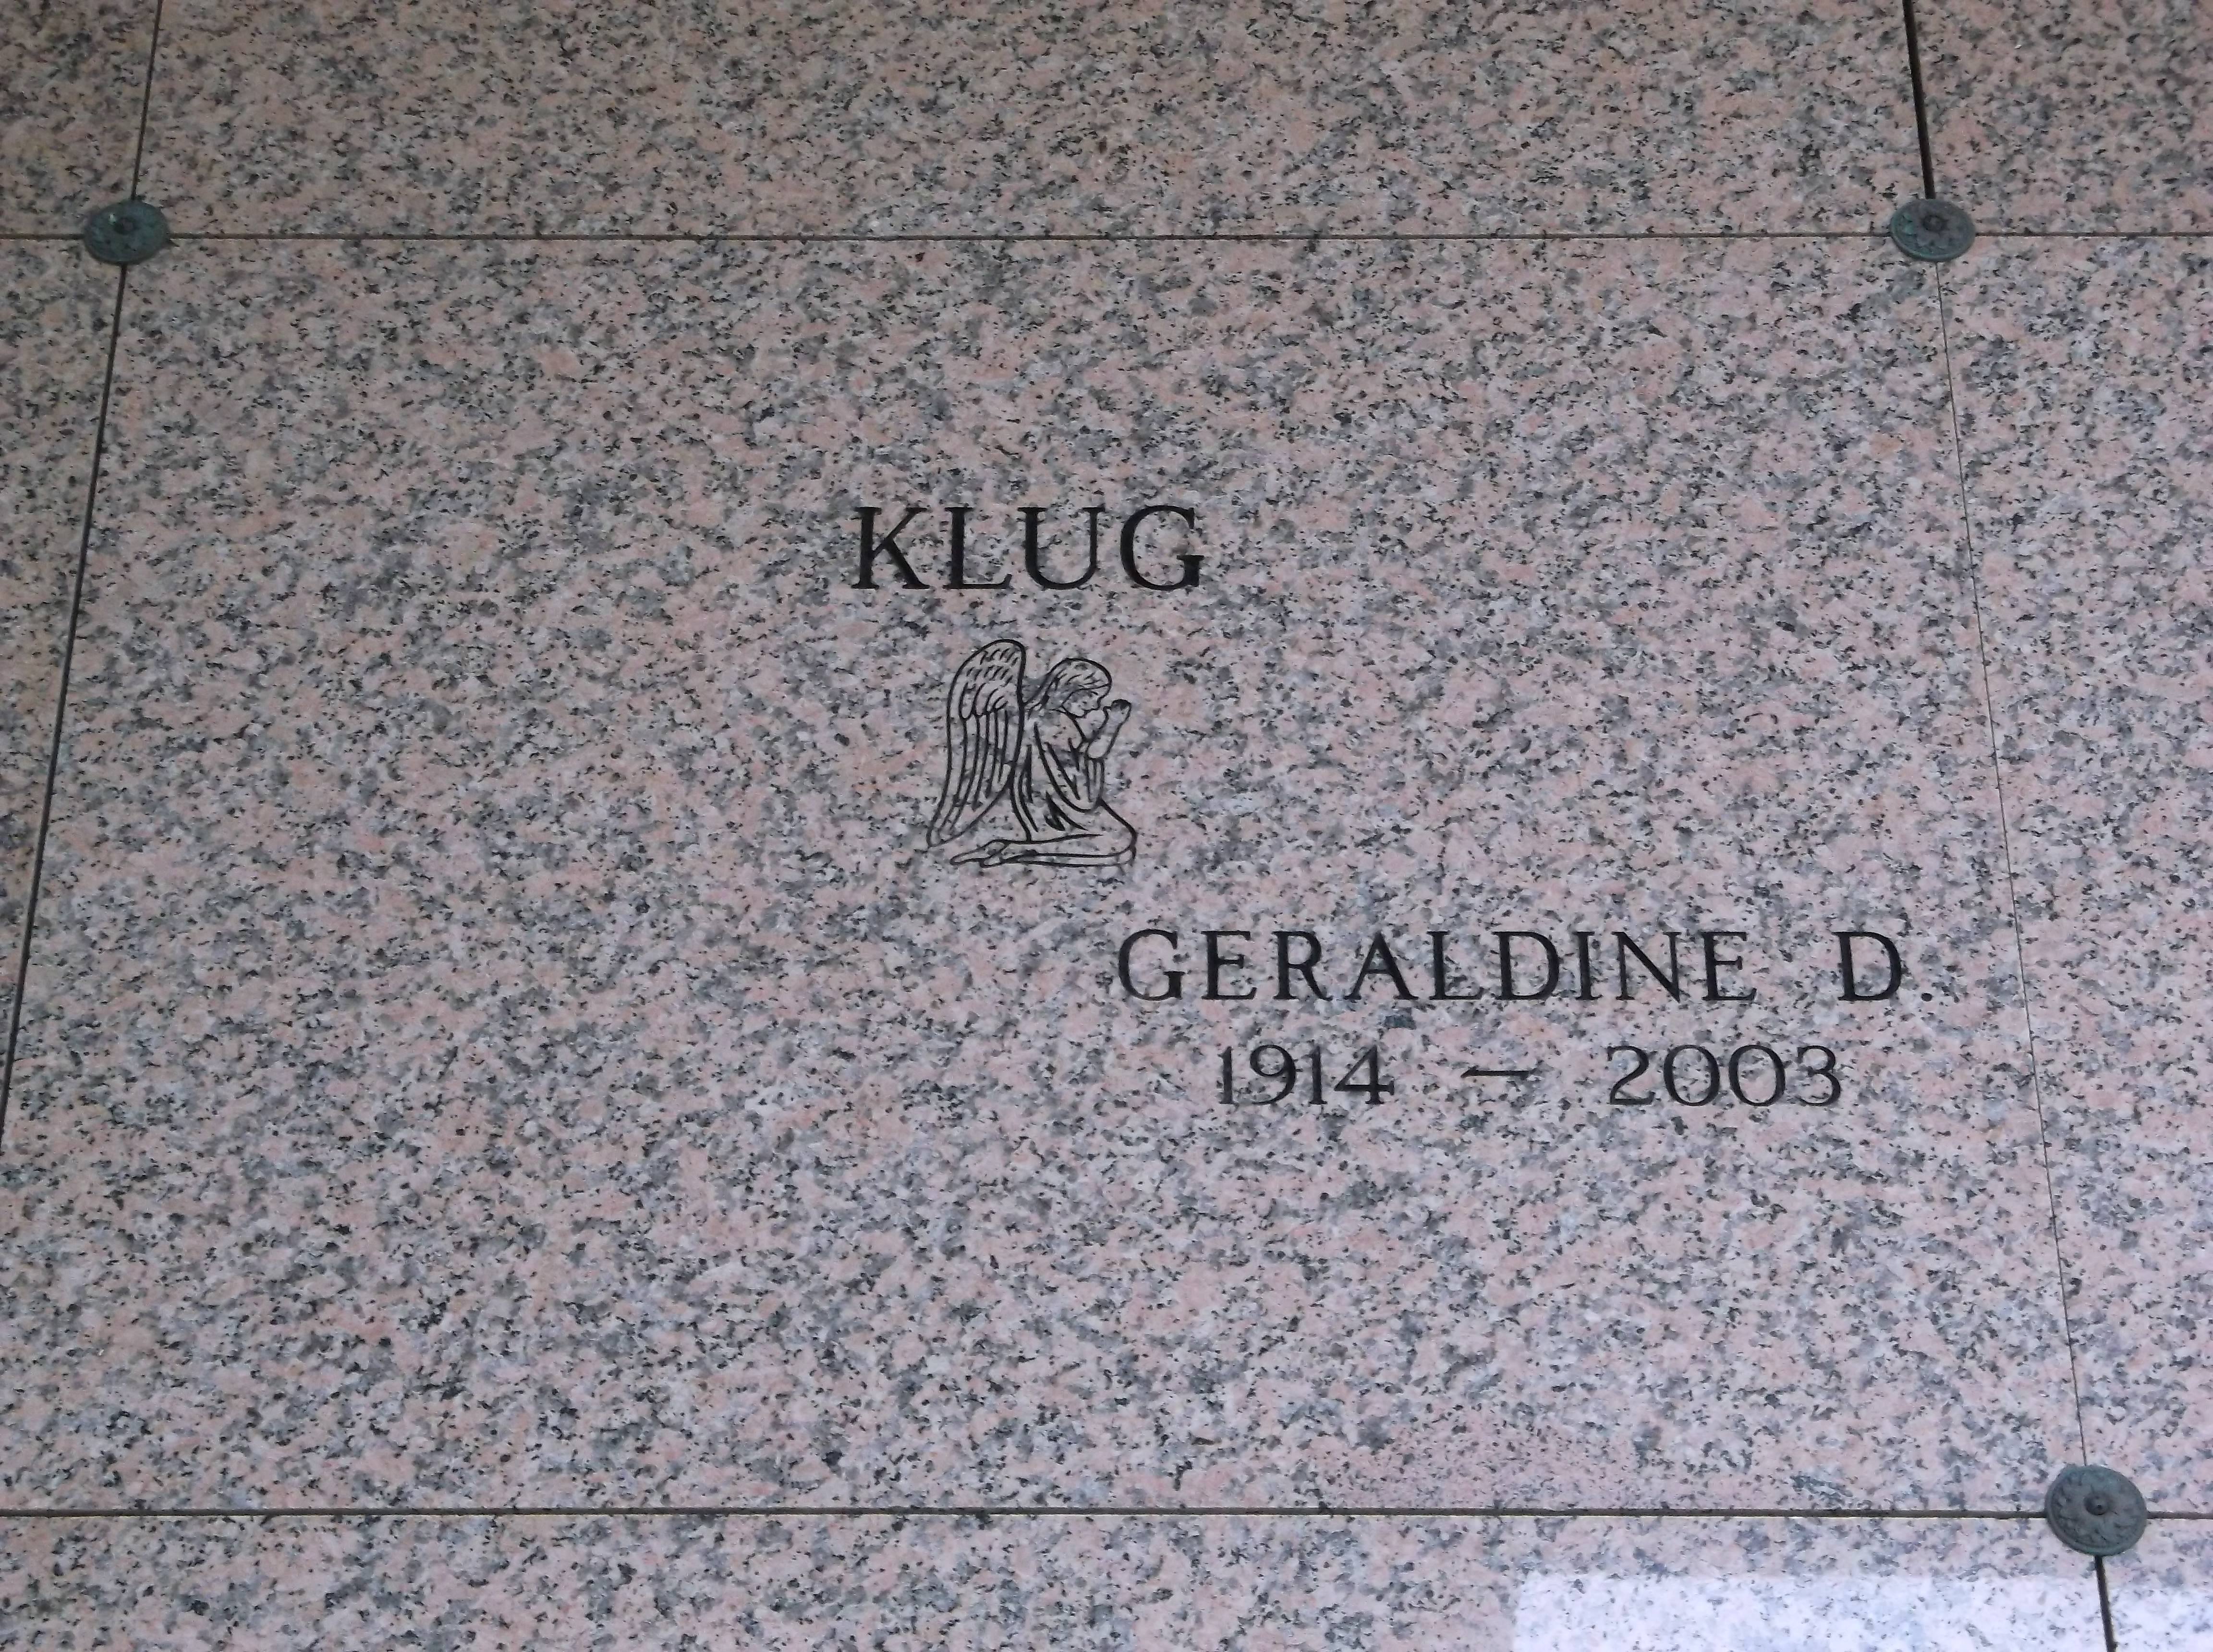 Geraldine D Klug